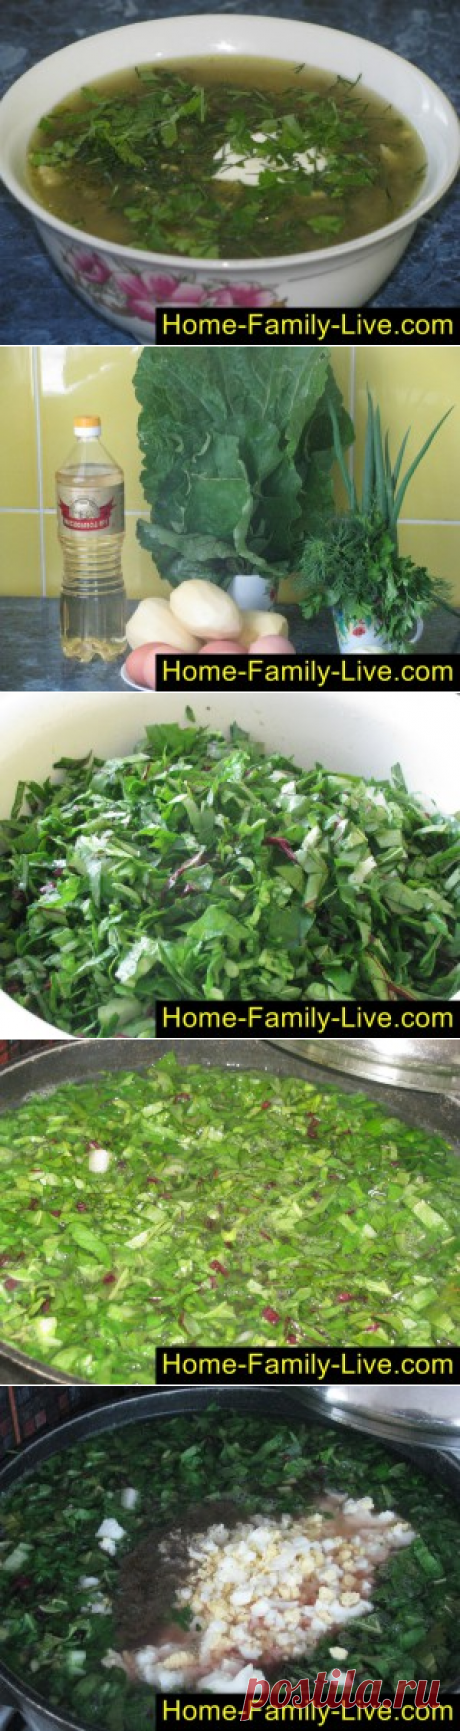 Борщ зеленый - пошаговый фоторецепт - зеленый суп из ревеня или щавеляКулинарные рецепты